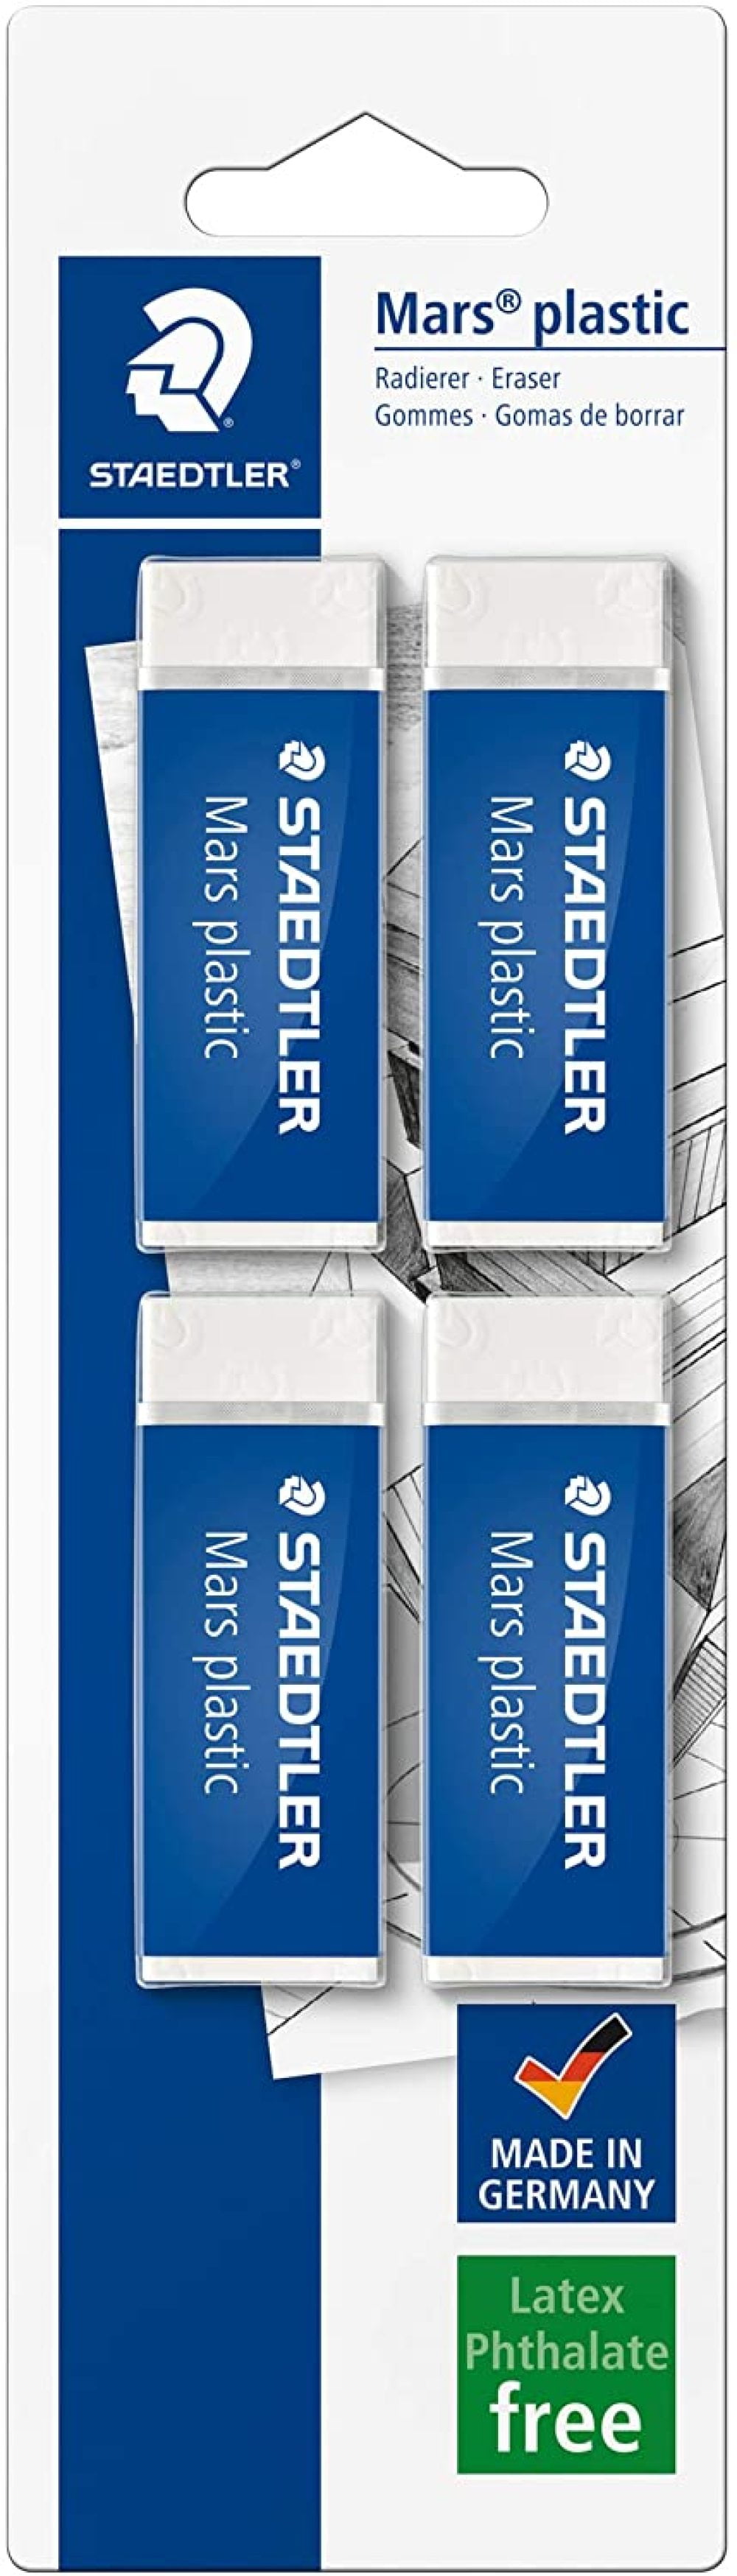 Staedtler 52650BK4DA Mars Plastic Eraser Pack of 4 in Blister Packaging 